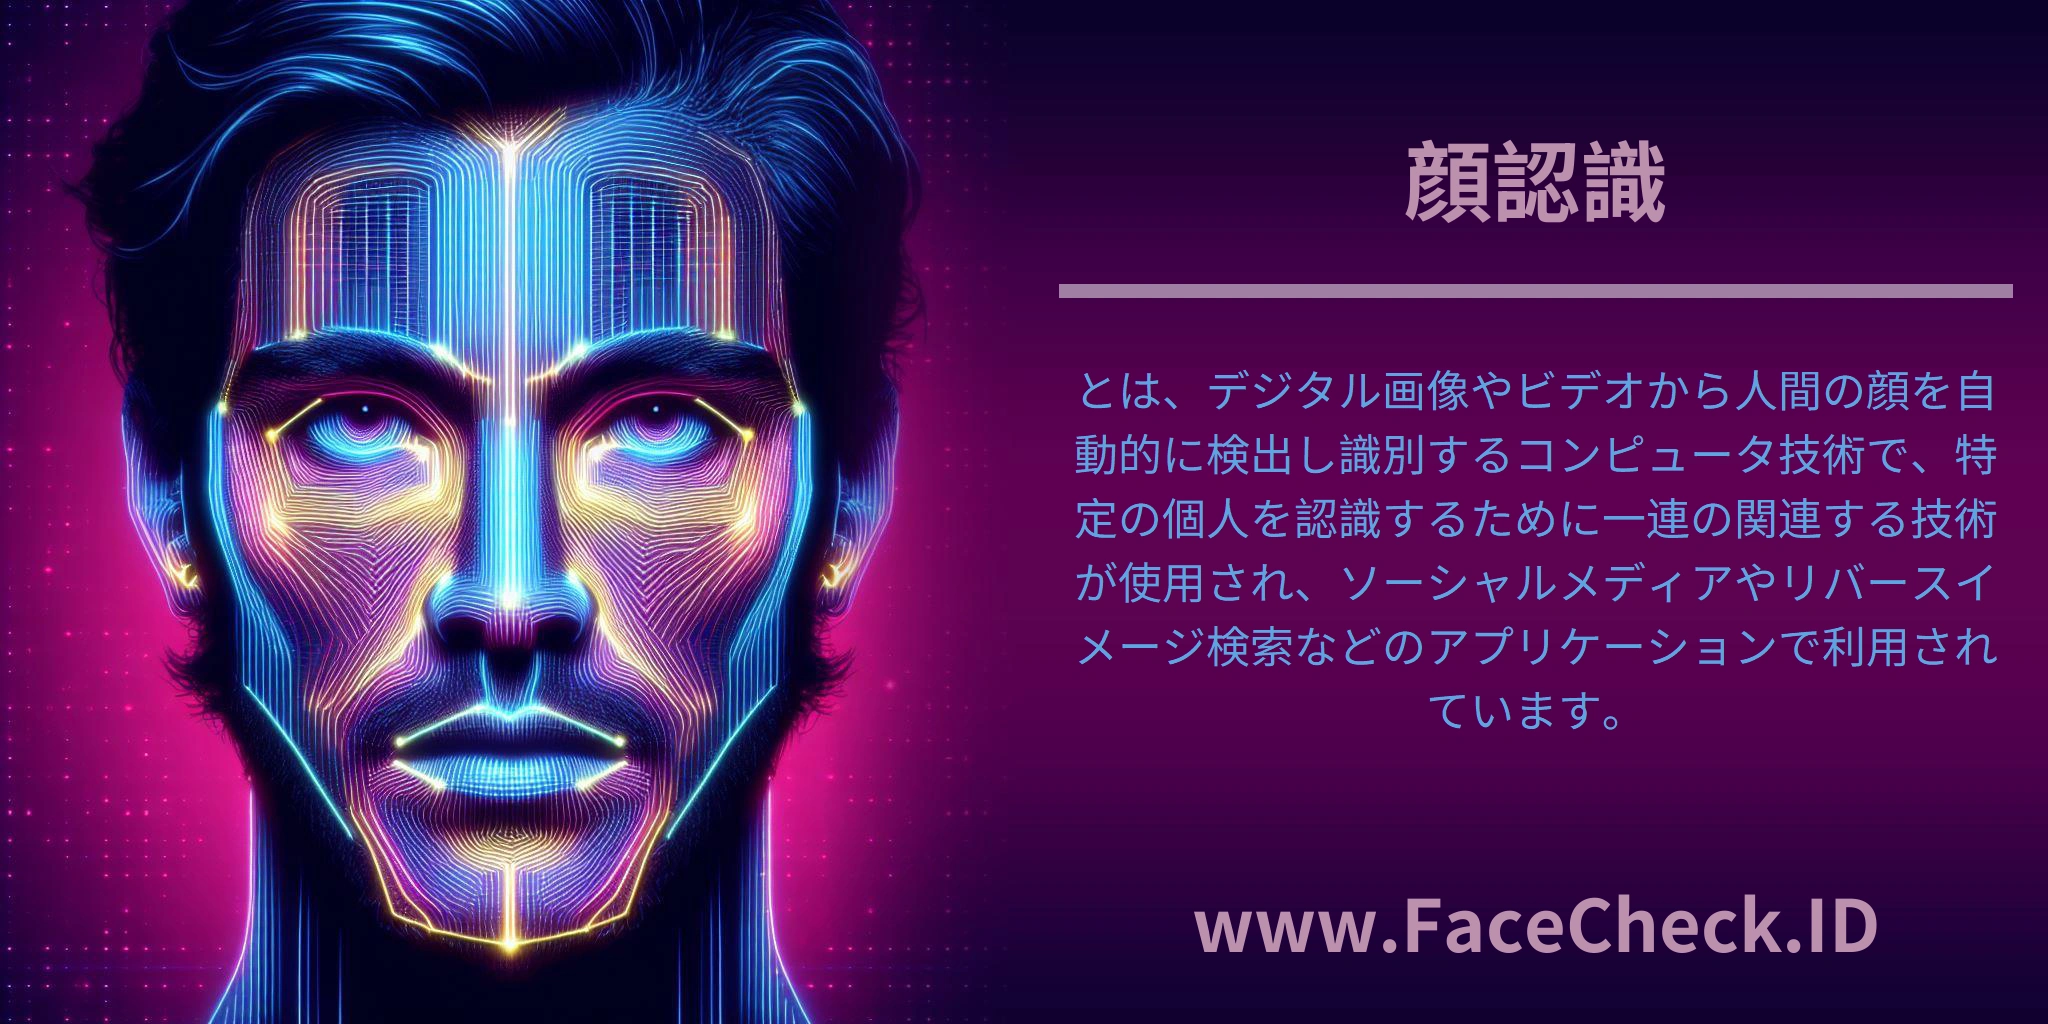 <b>顔認識</b>とは、デジタル画像やビデオから人間の顔を自動的に検出し識別するコンピュータ技術で、特定の個人を認識するために一連の関連する技術が使用され、ソーシャルメディアやリバースイメージ検索などのアプリケーションで利用されています。